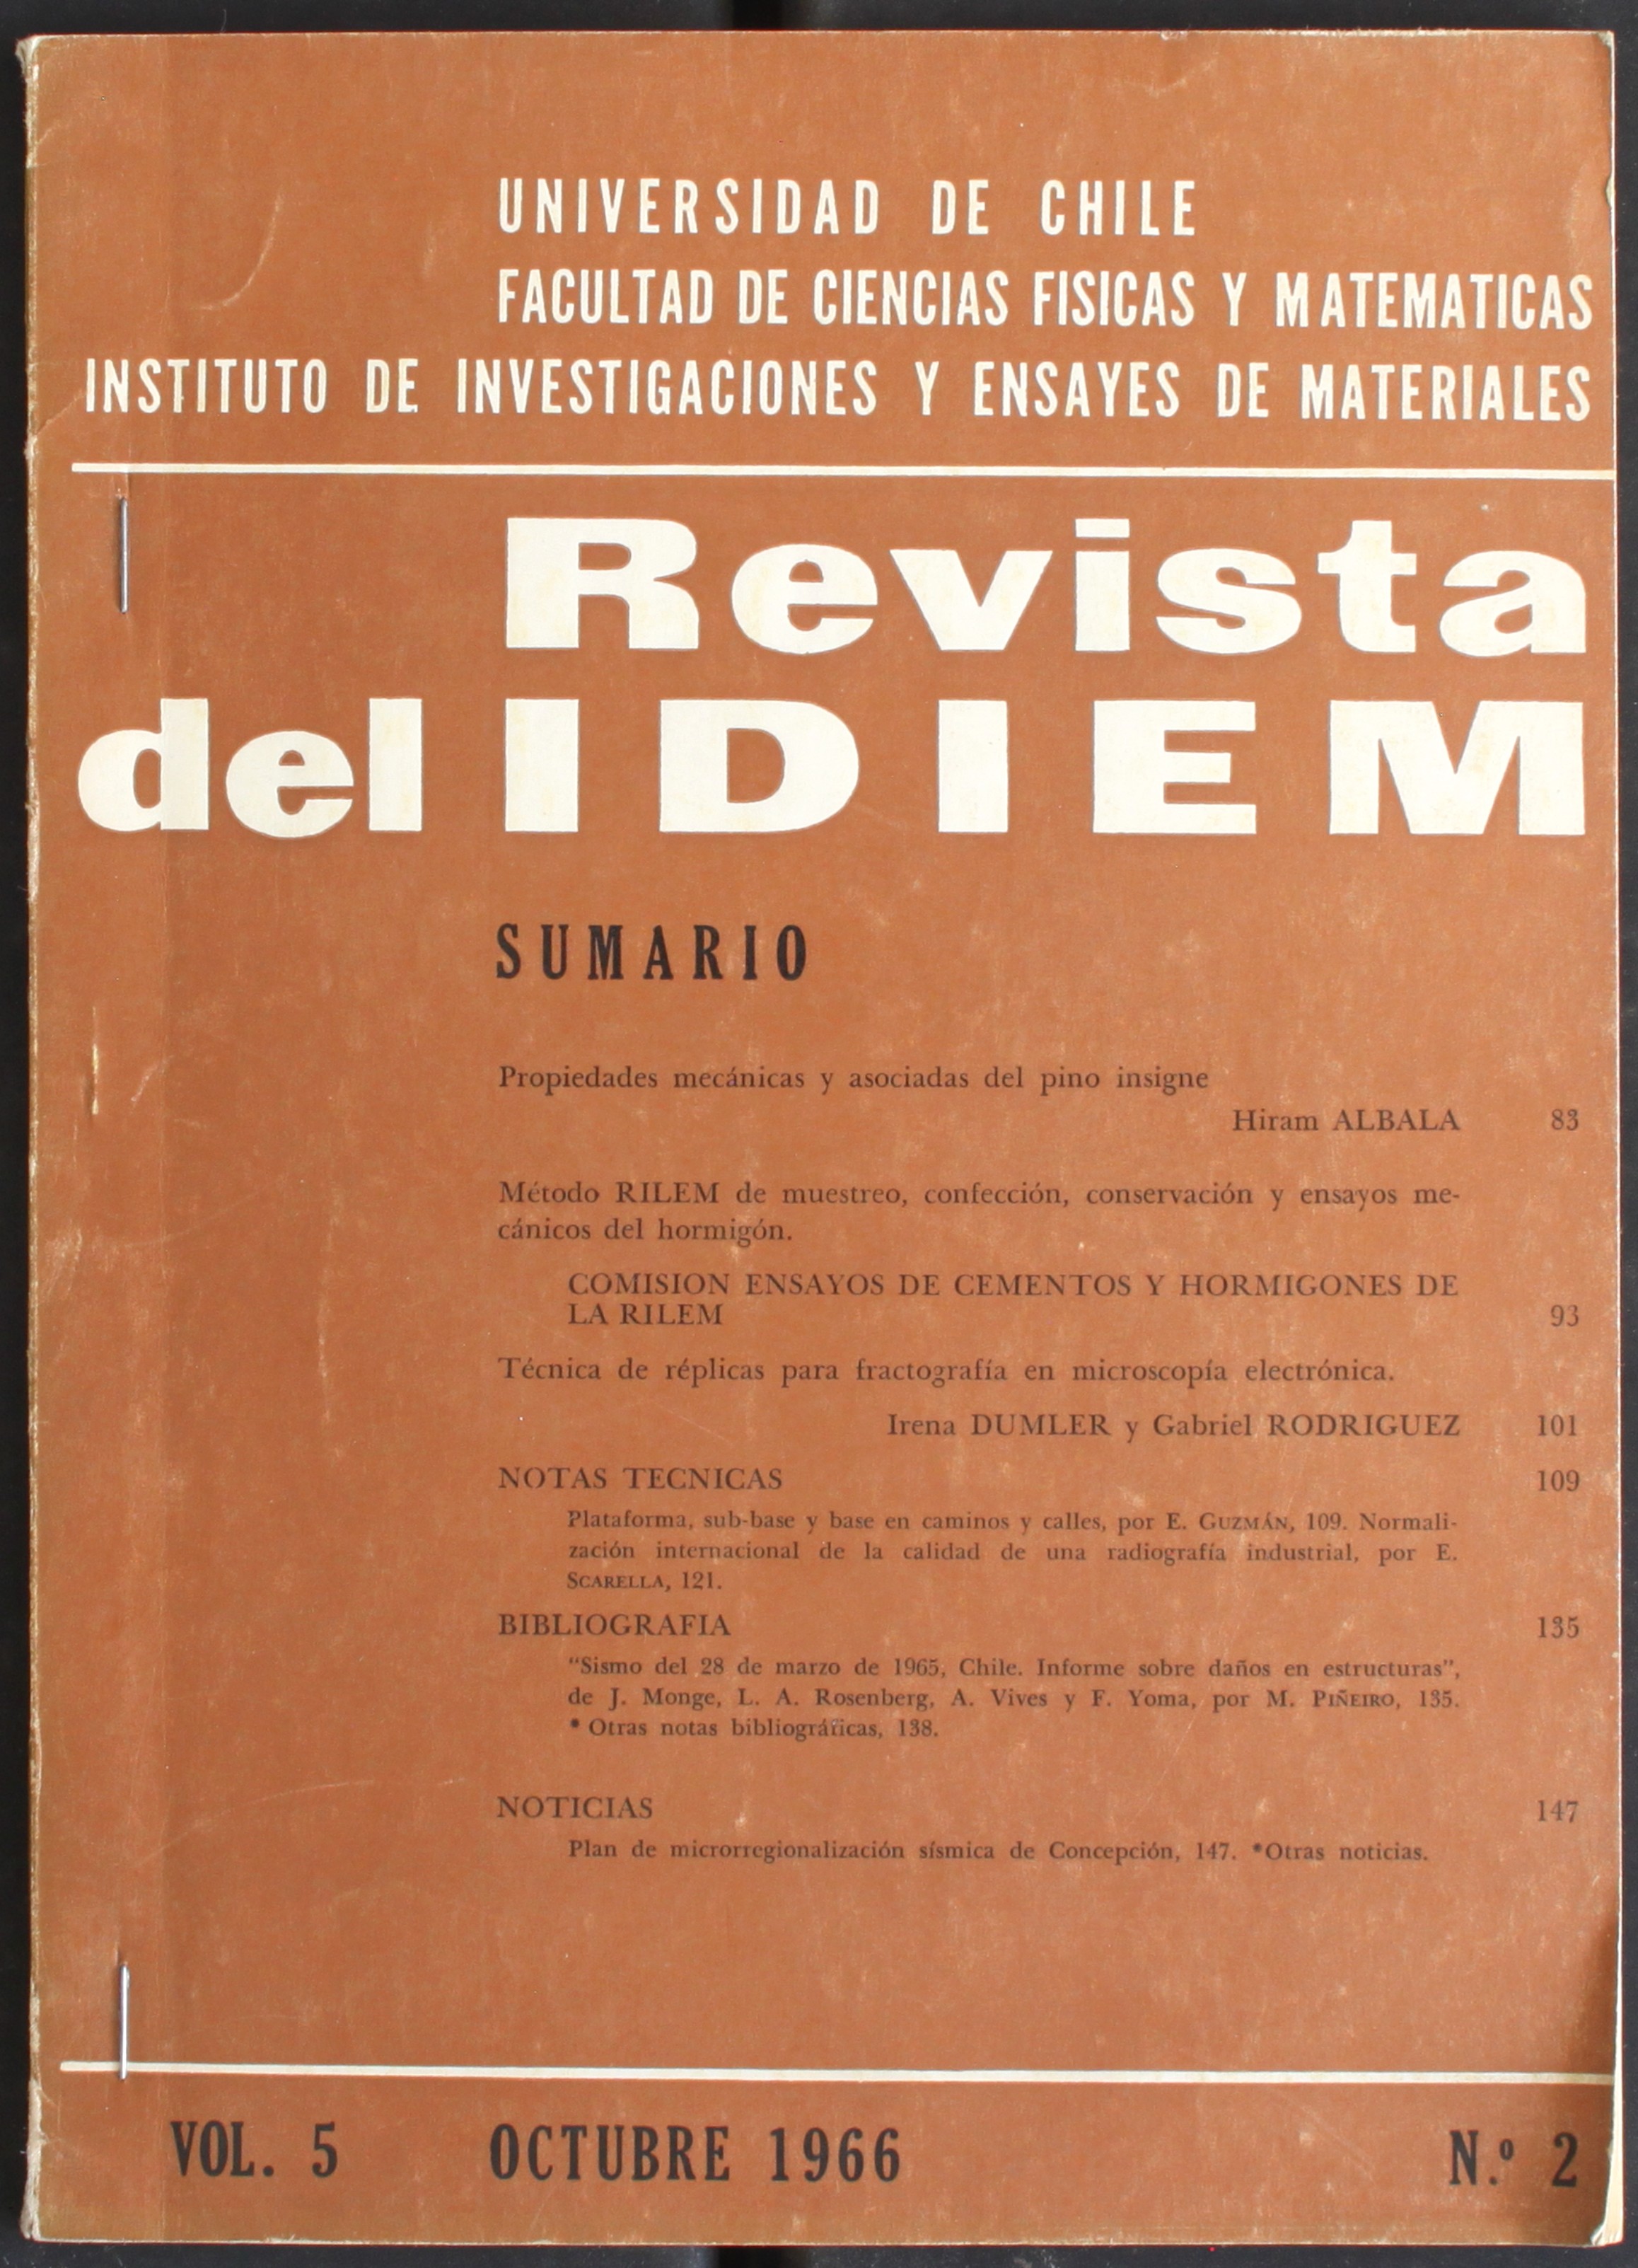 											Ver Vol. 3 Núm. 1 (1964): Año 1964, marzo
										